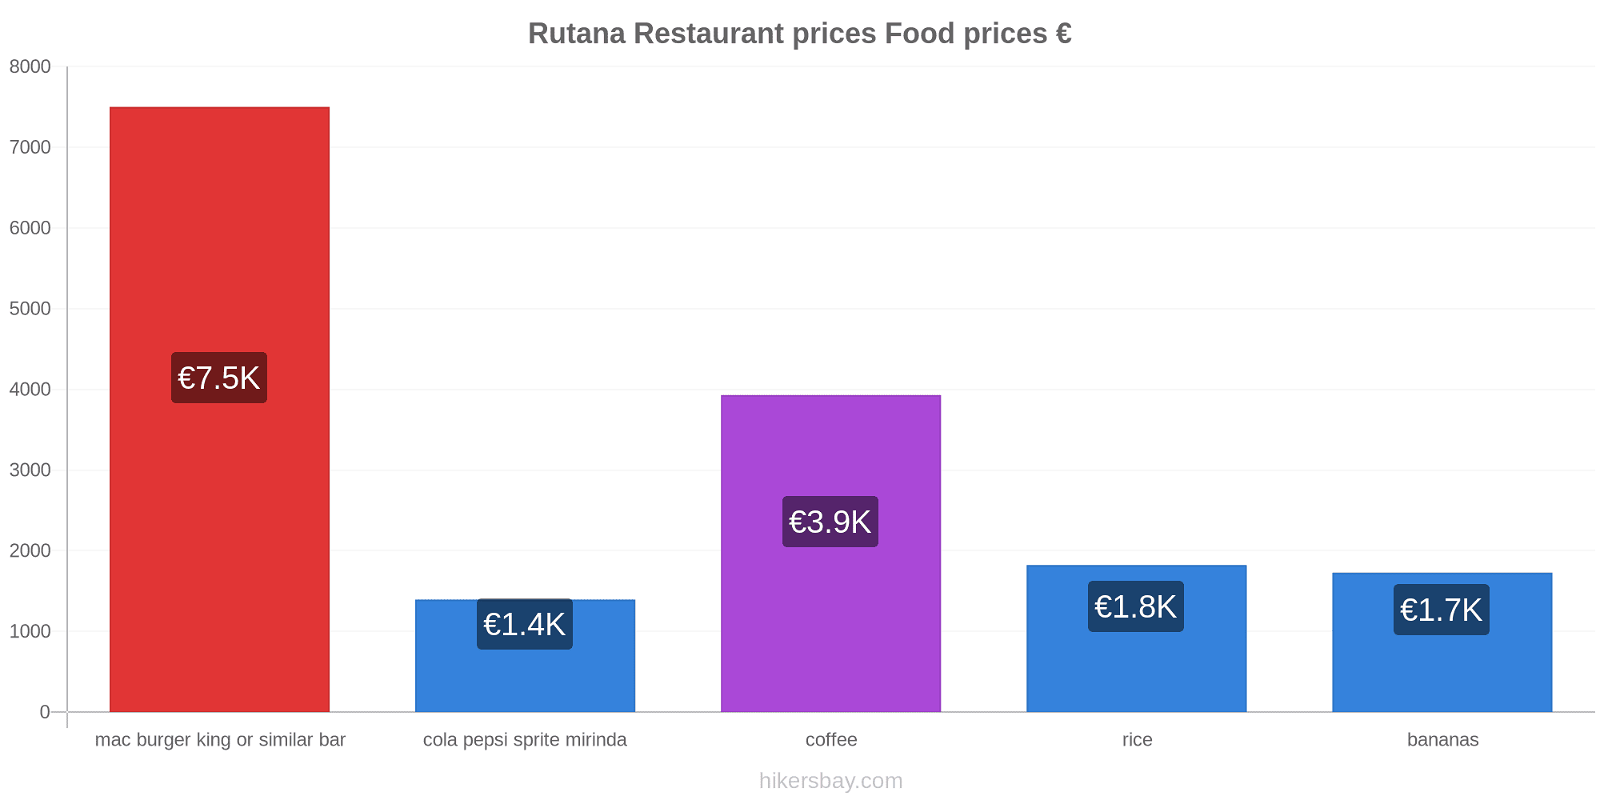 Rutana price changes hikersbay.com